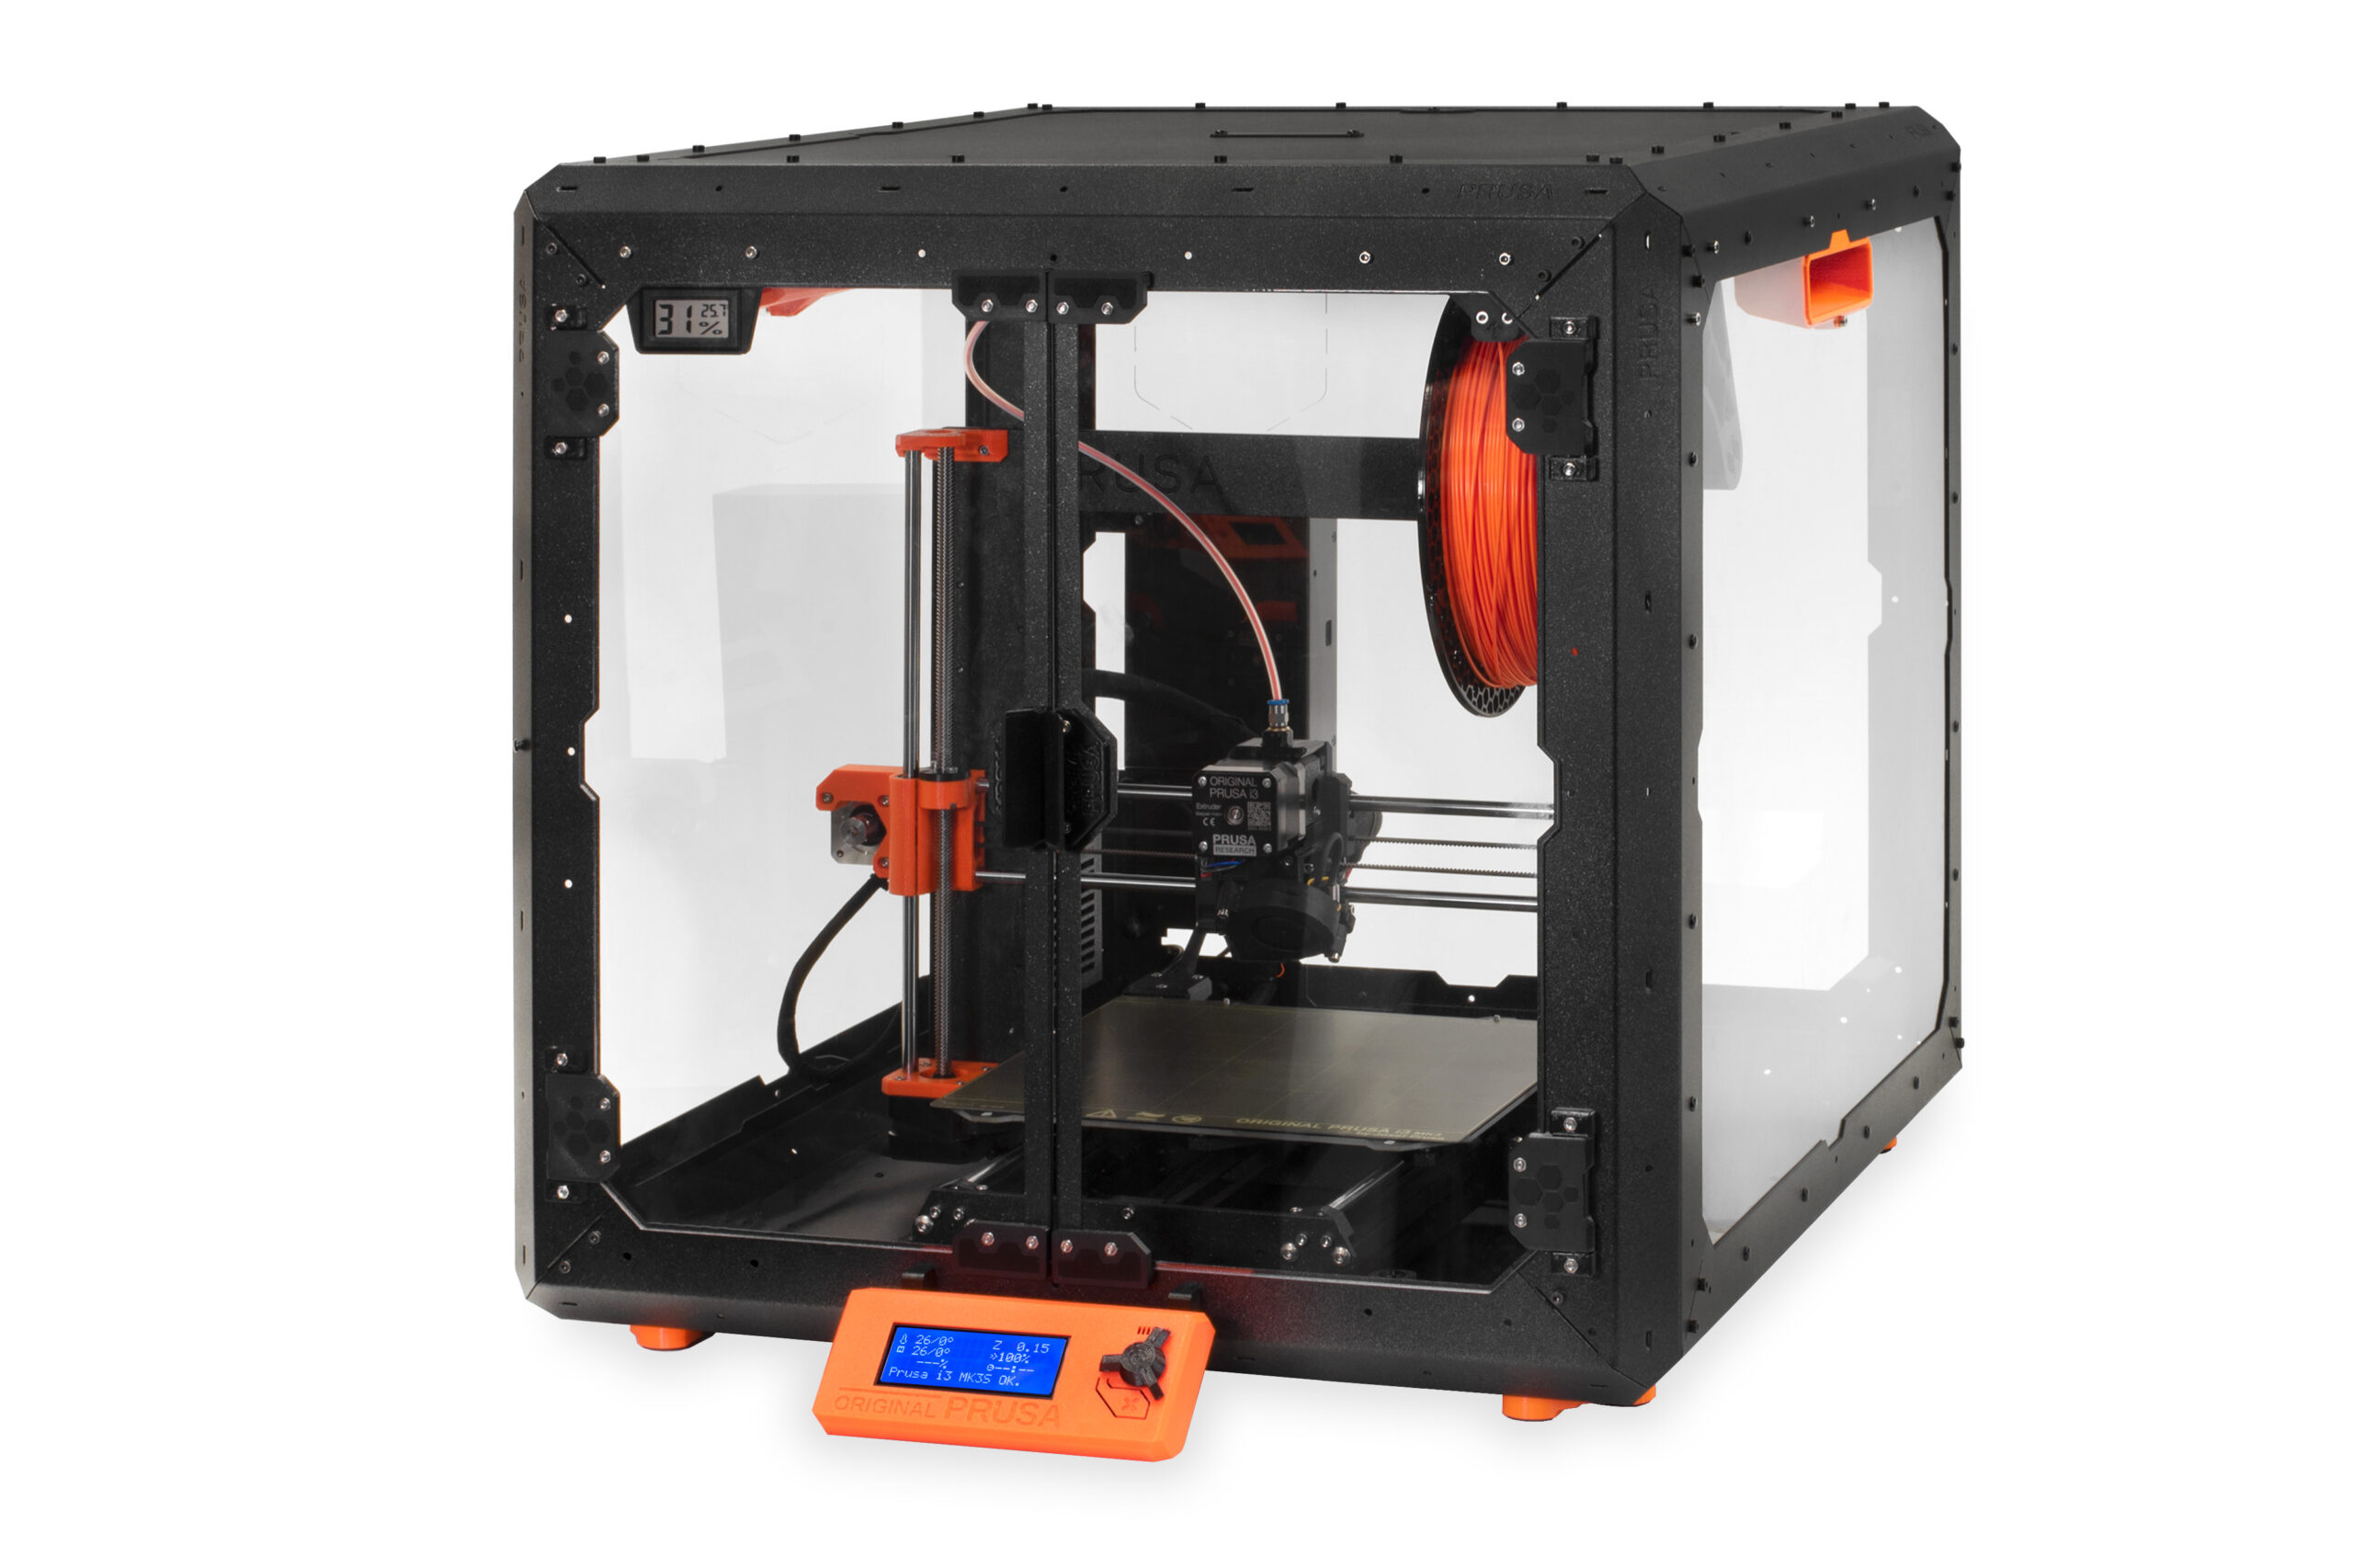 Prusa i3 MK3S+ kit - Imprimante 3D en kit DIY - A-Printer Impression 3D